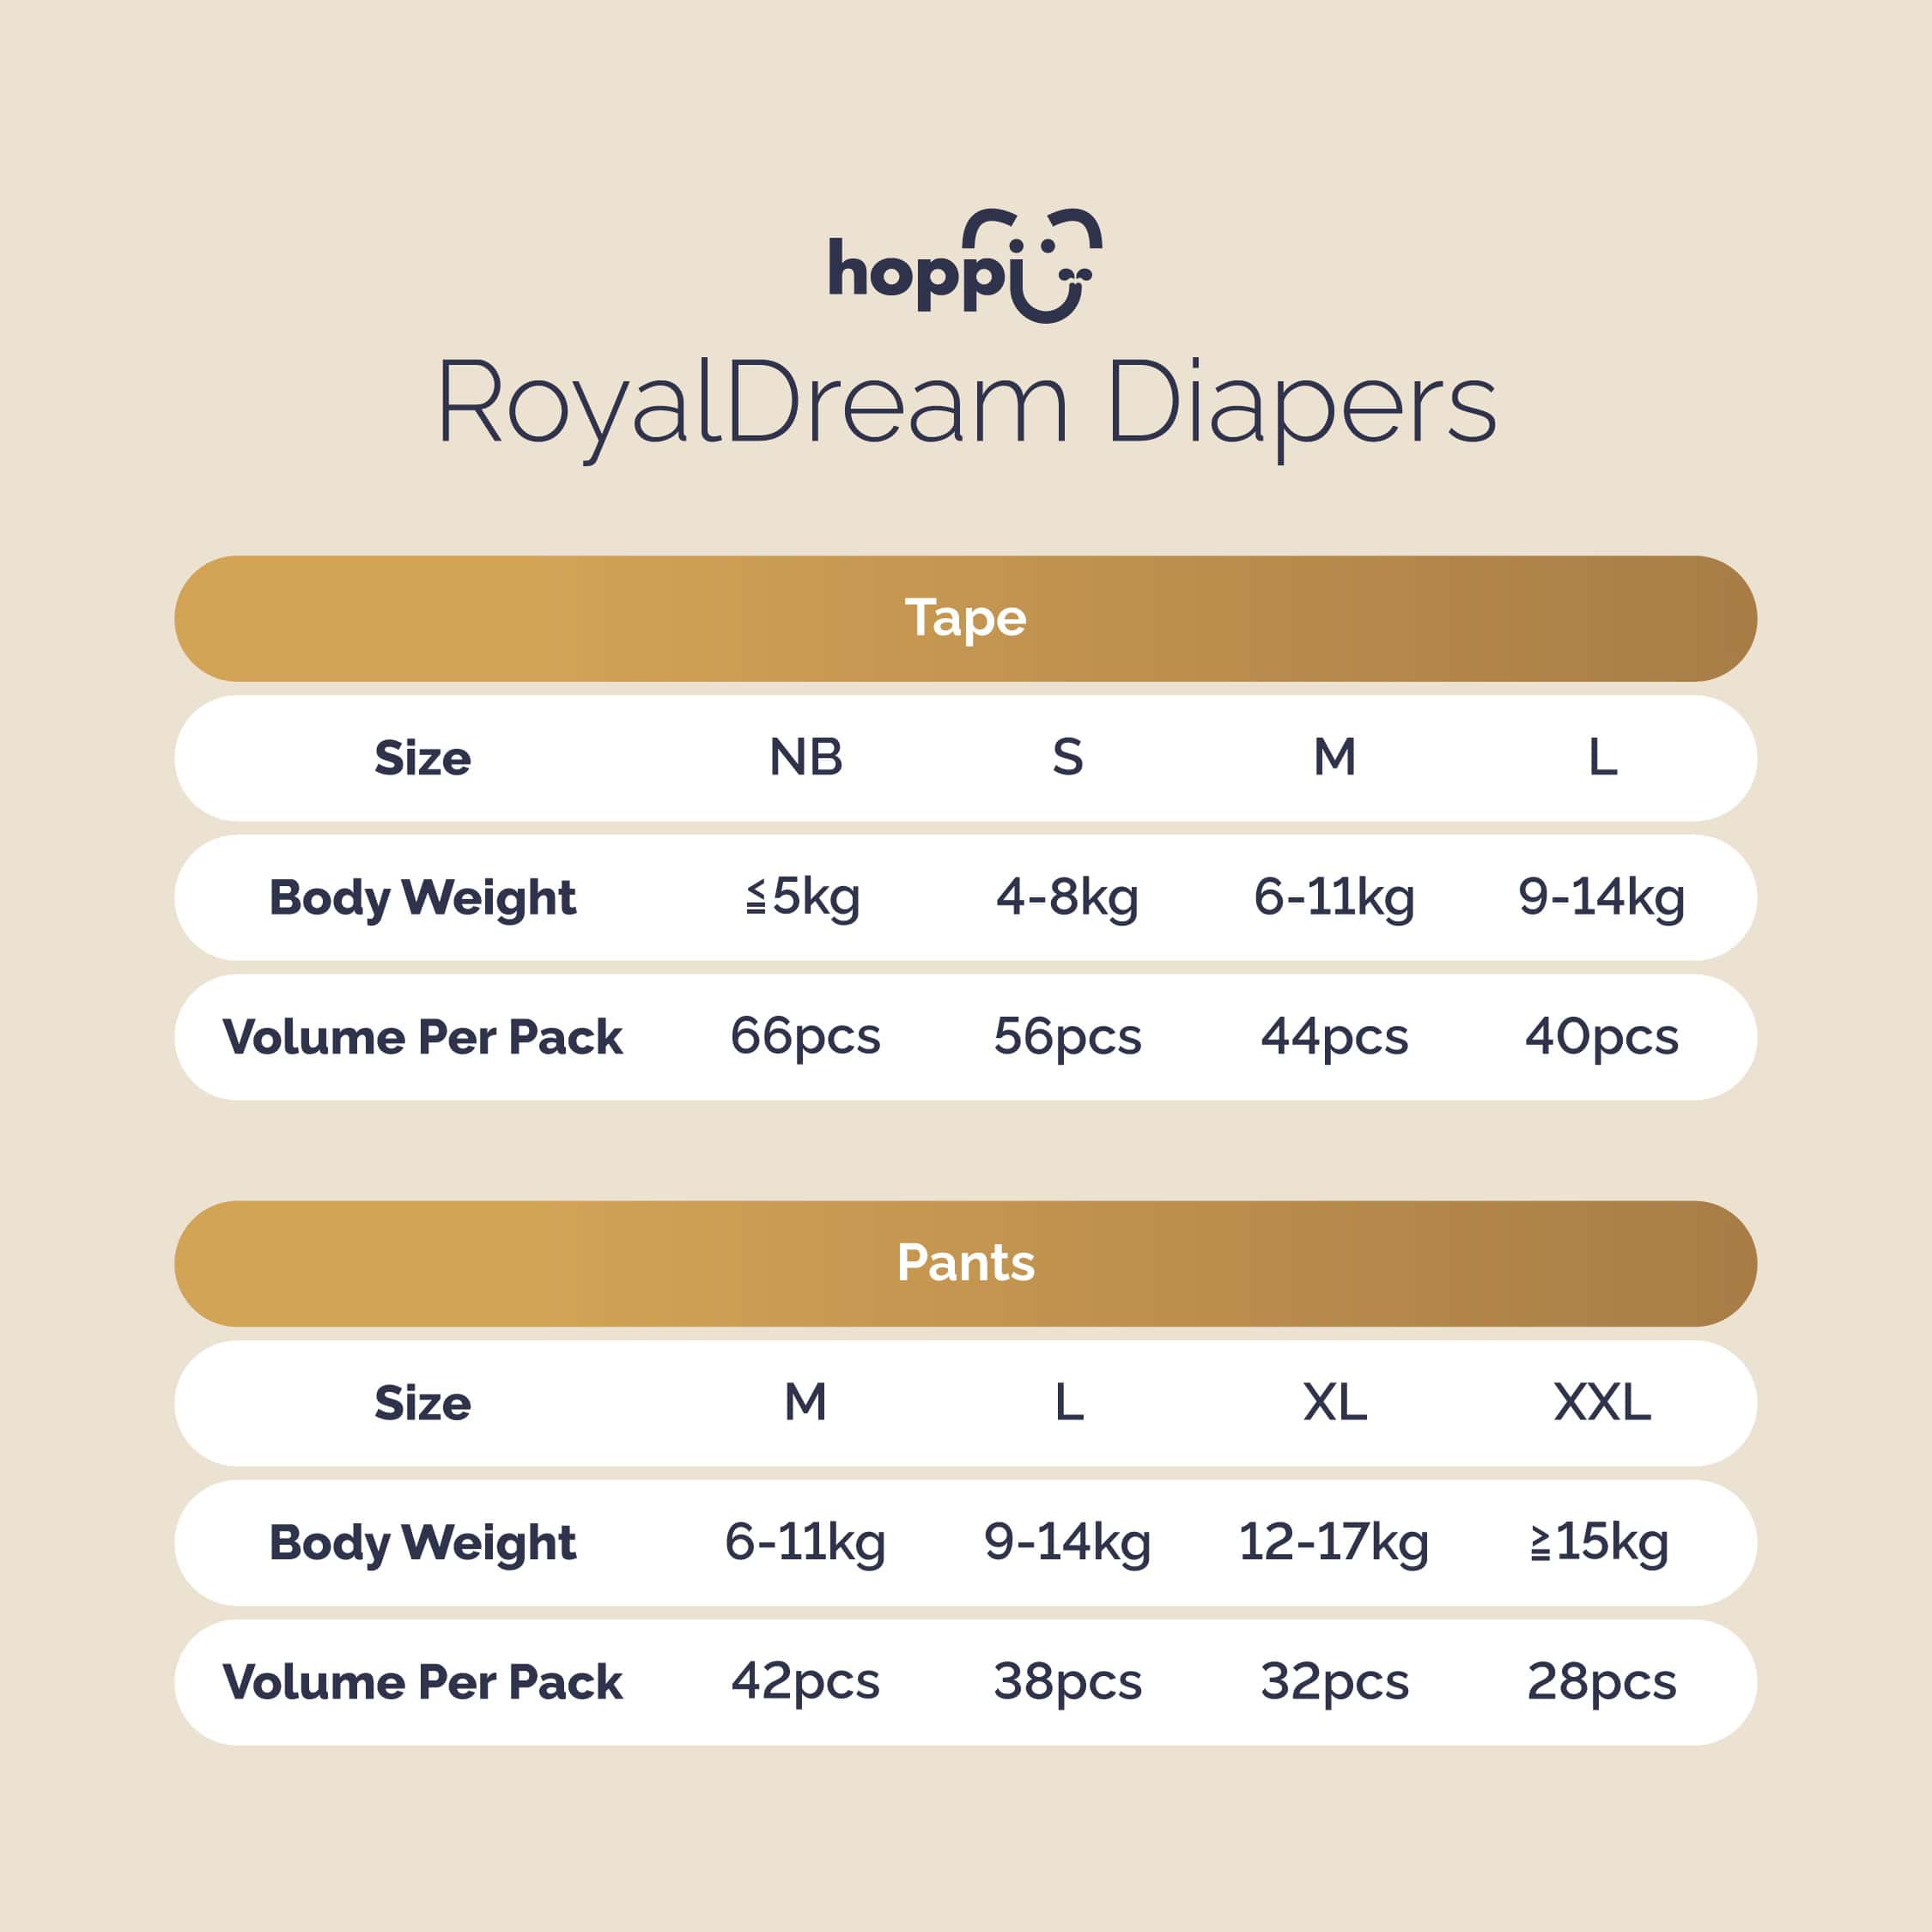 hp00124 royaldream diaper thumbnails en 09